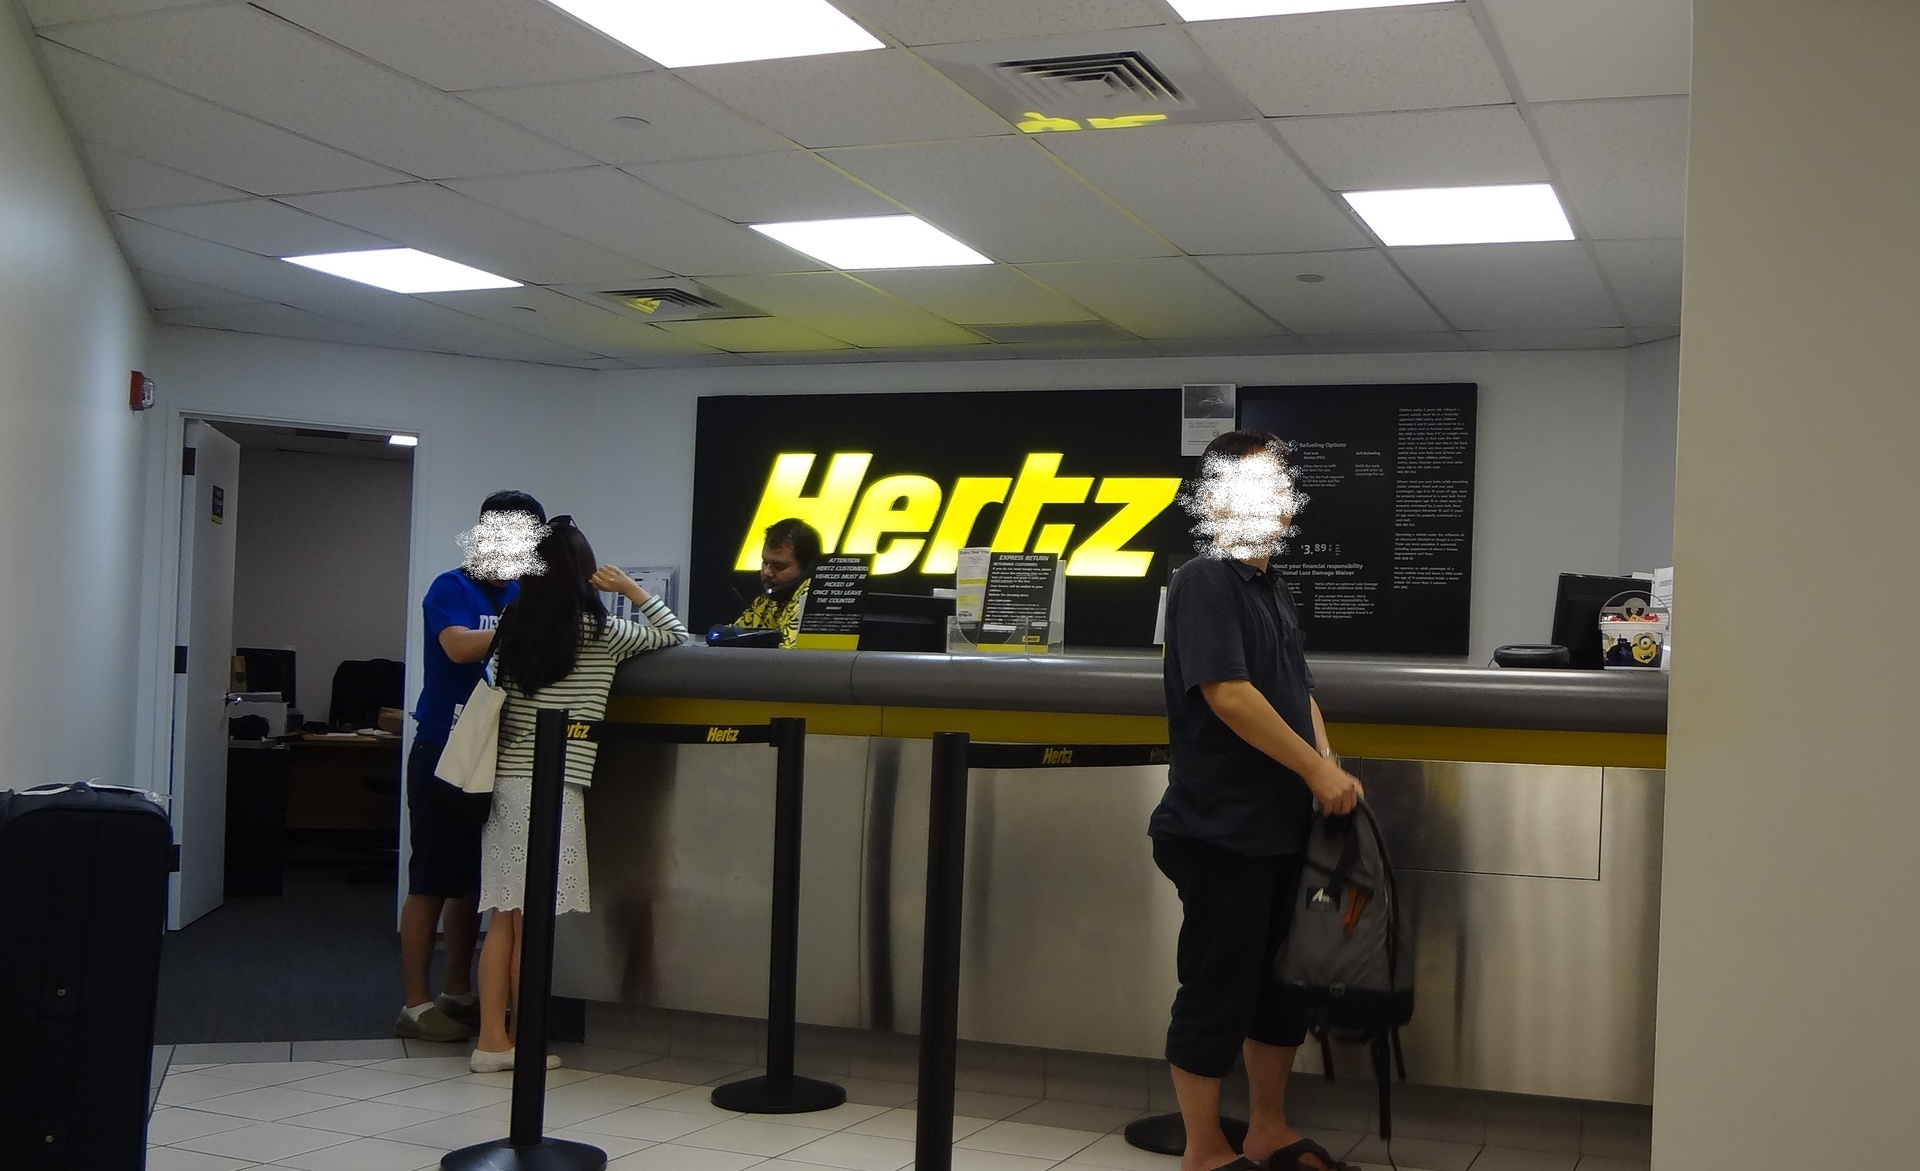 Hertzでレンタカーを借りてみました ハイアット リージェンシー2階 ハワイ初心者家族のまったり旅行記 15 16版